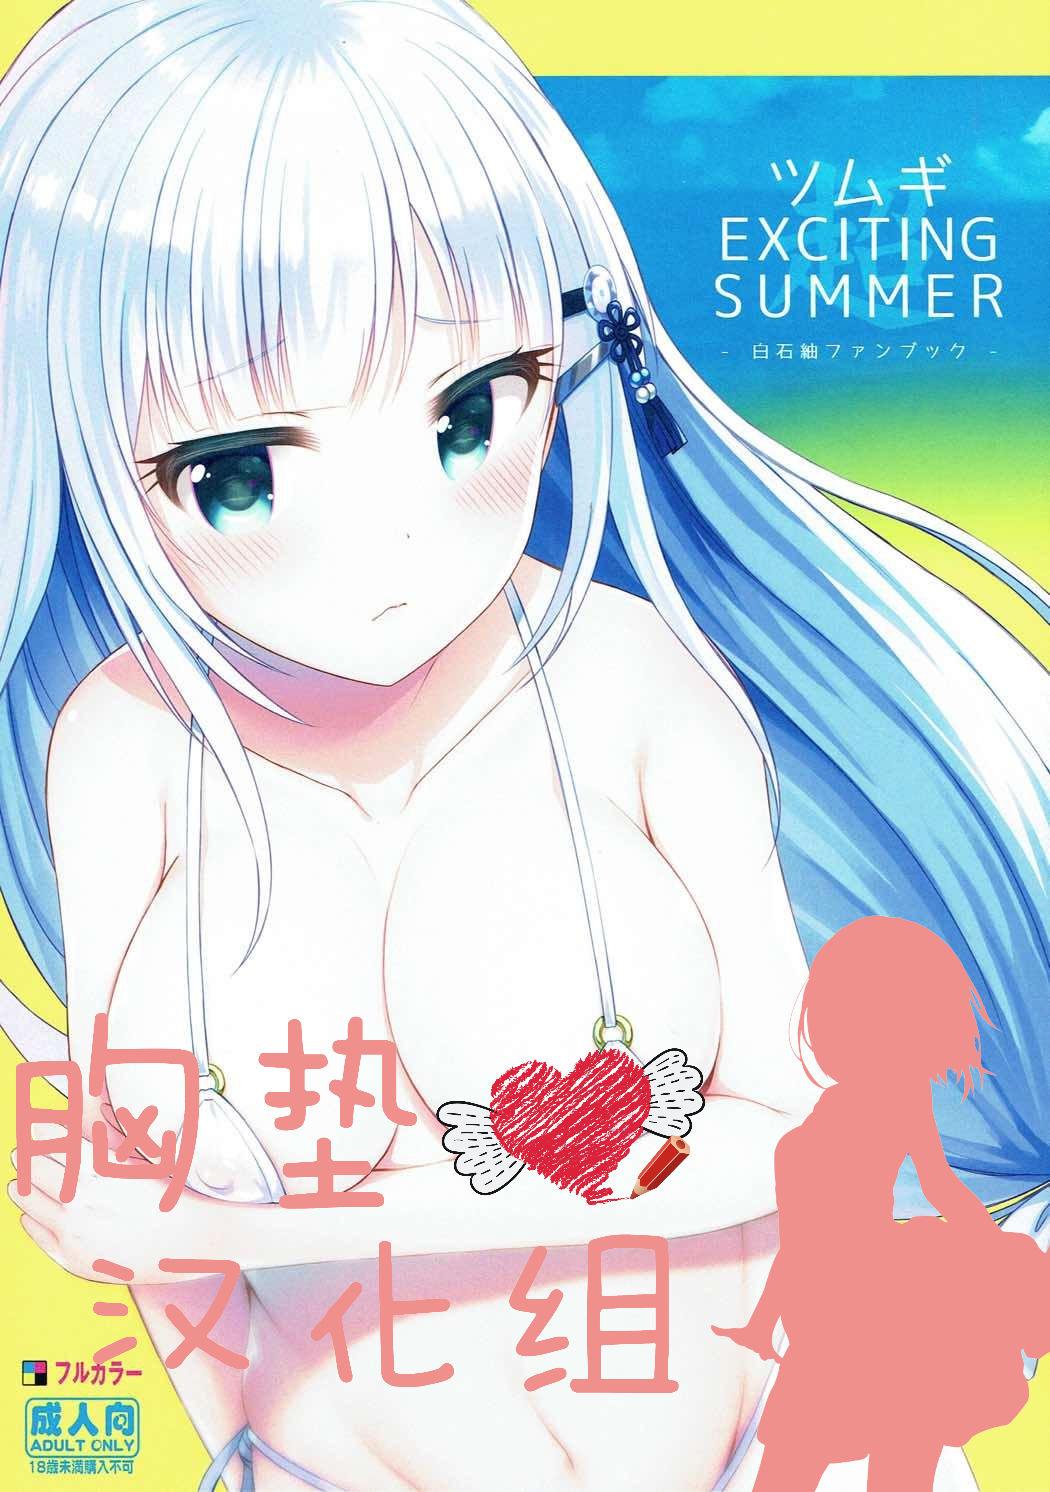 Tsumugi EXCITING SUMMER 0